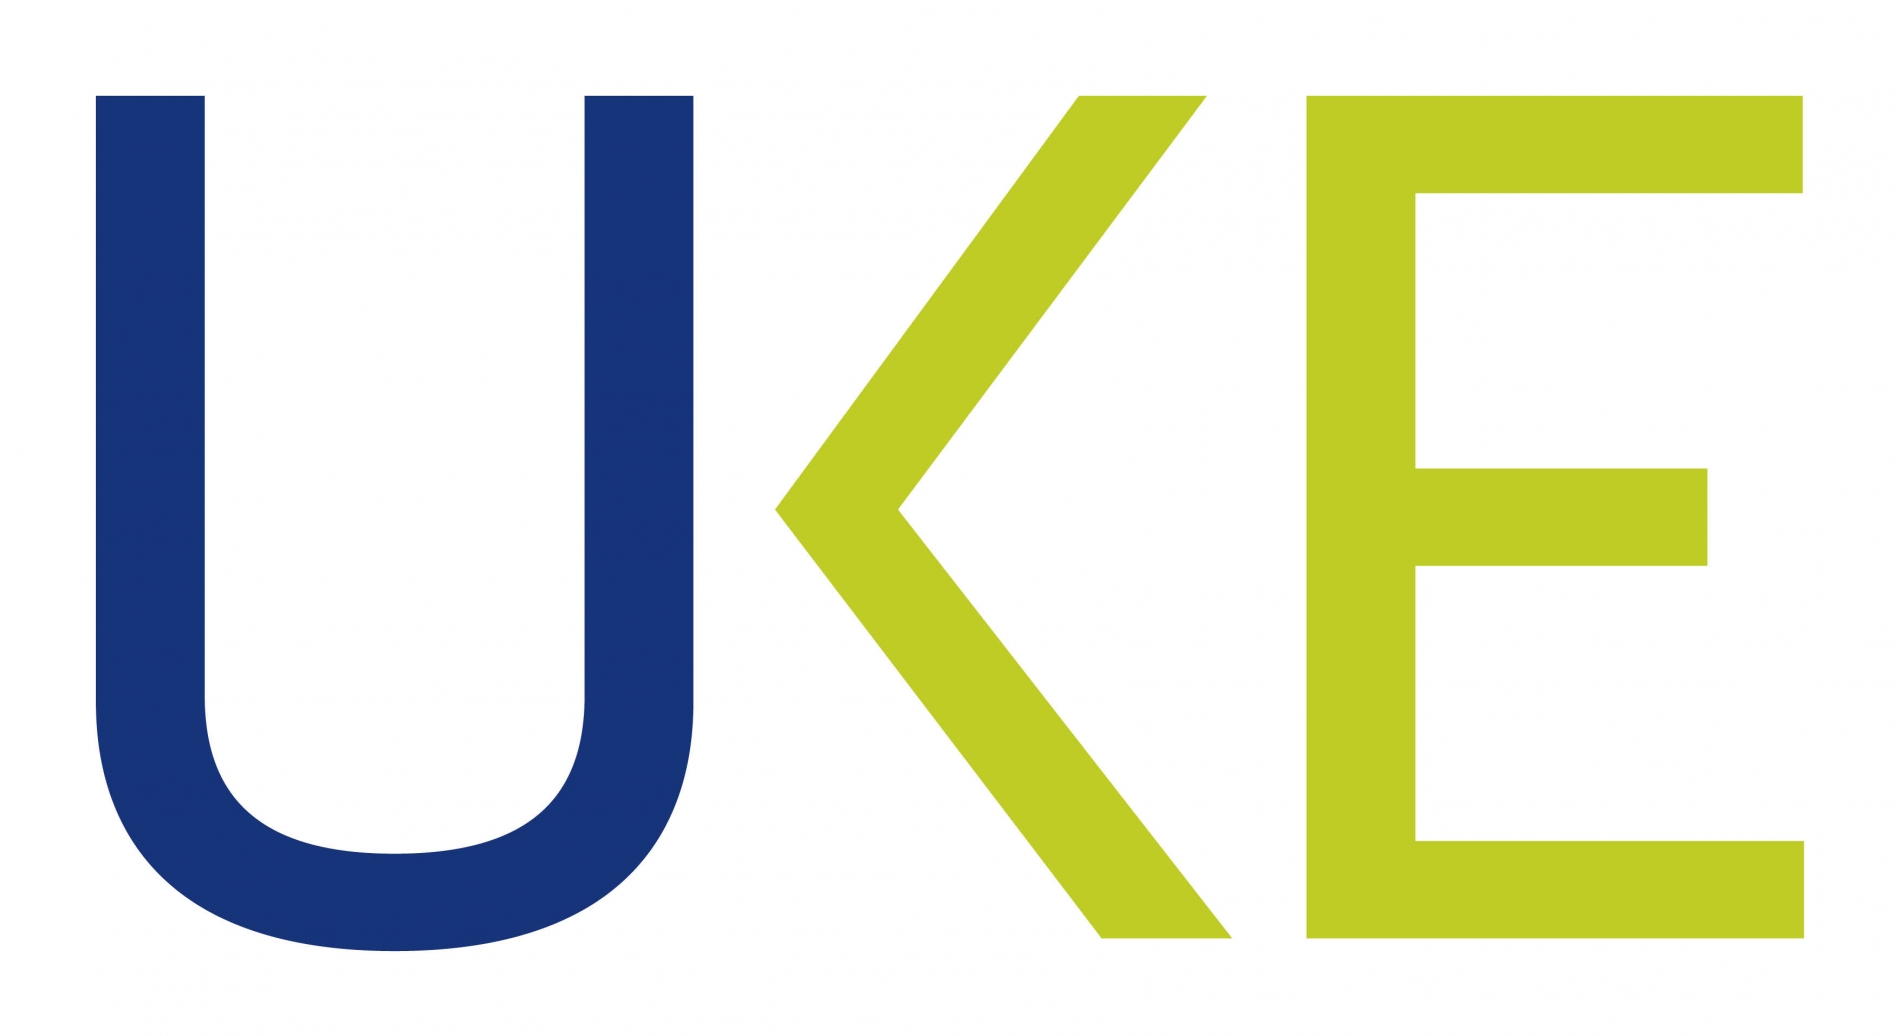 uke_logo.jpg